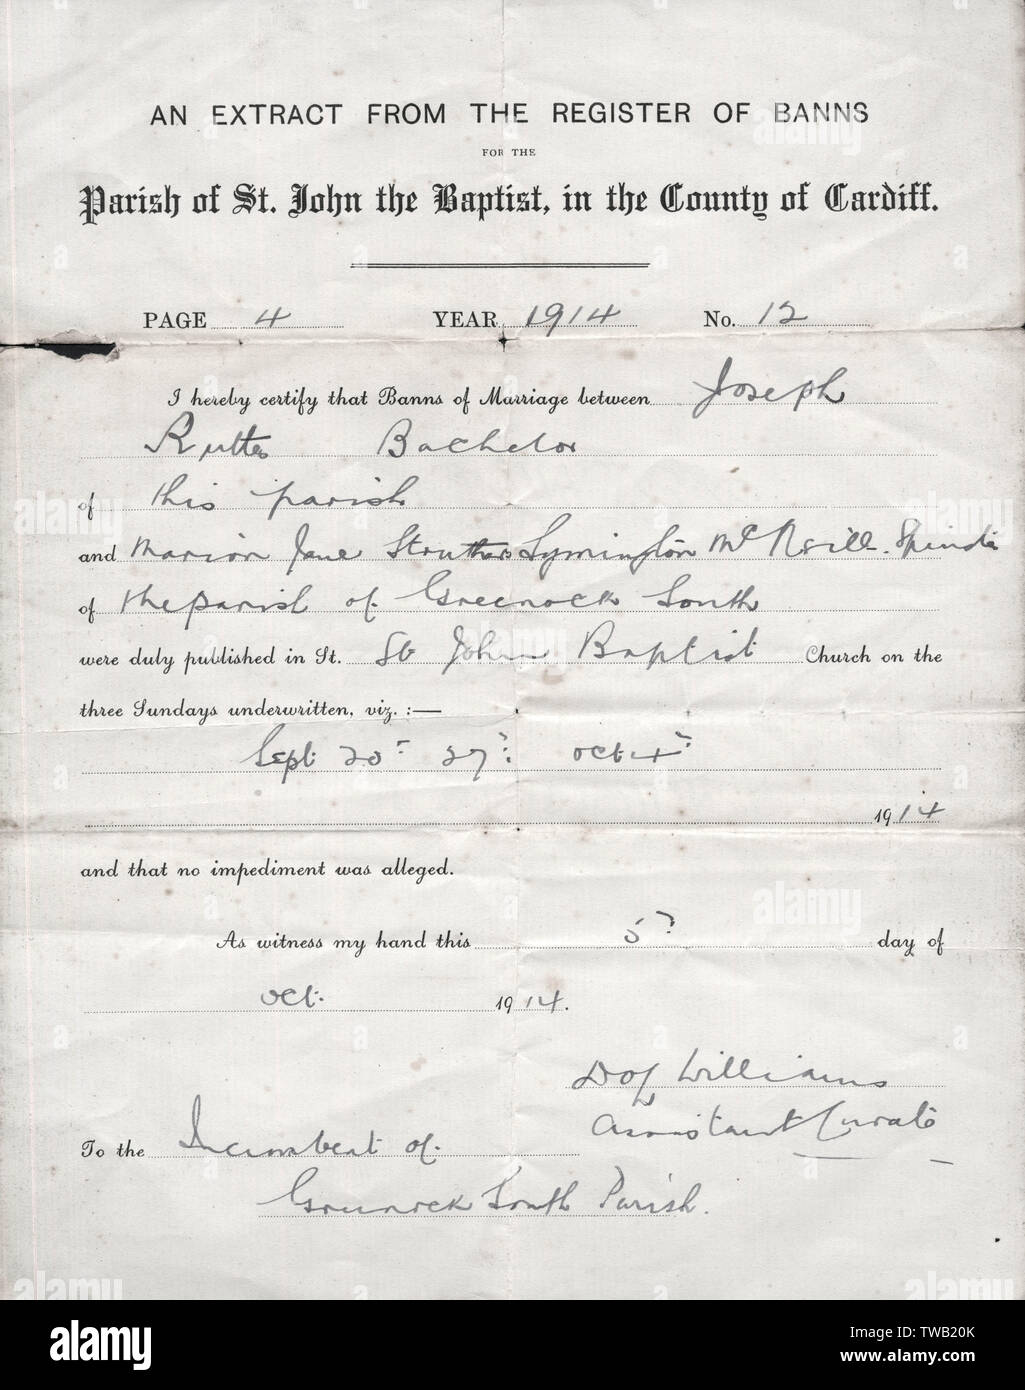 Register der Hochzeitsbanns, 1914 Stockfoto